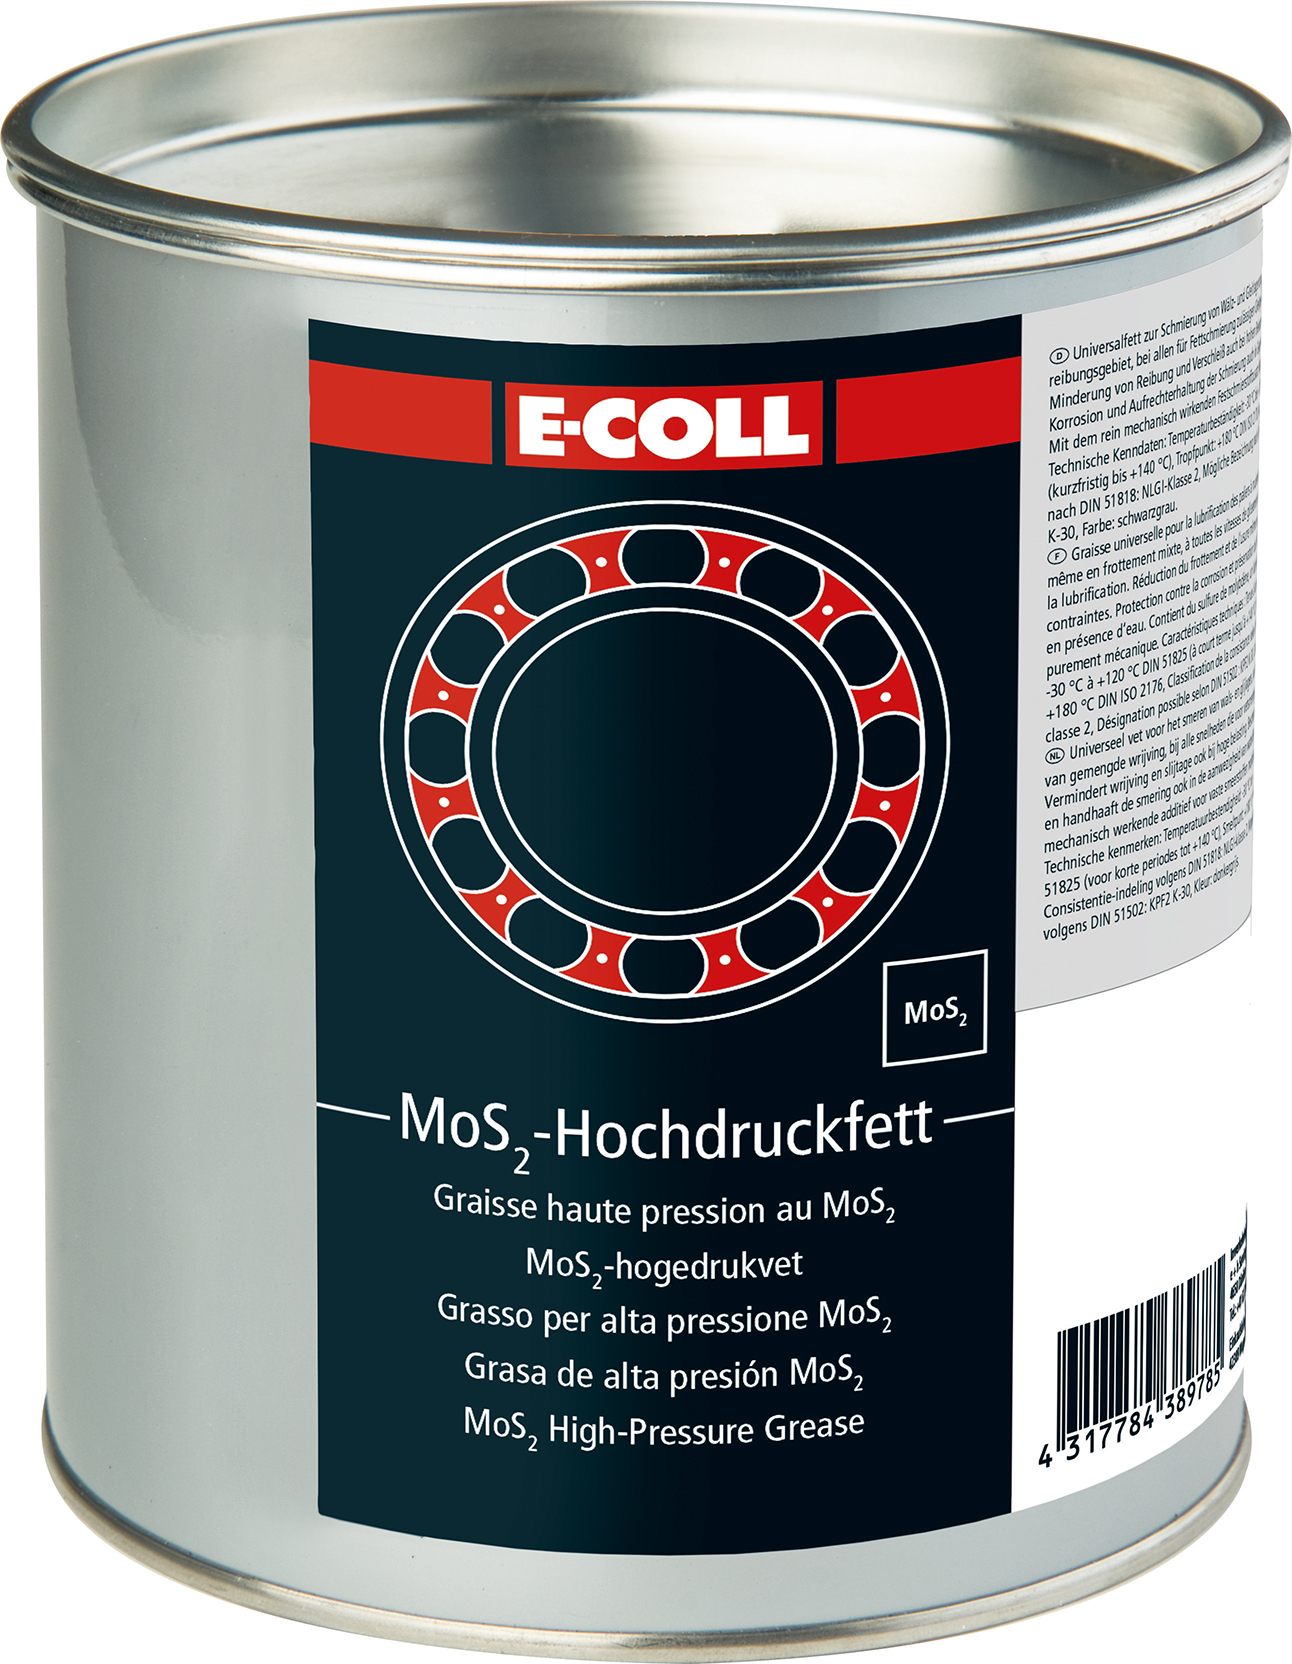 E-COLL Hochdruckfett MoS2